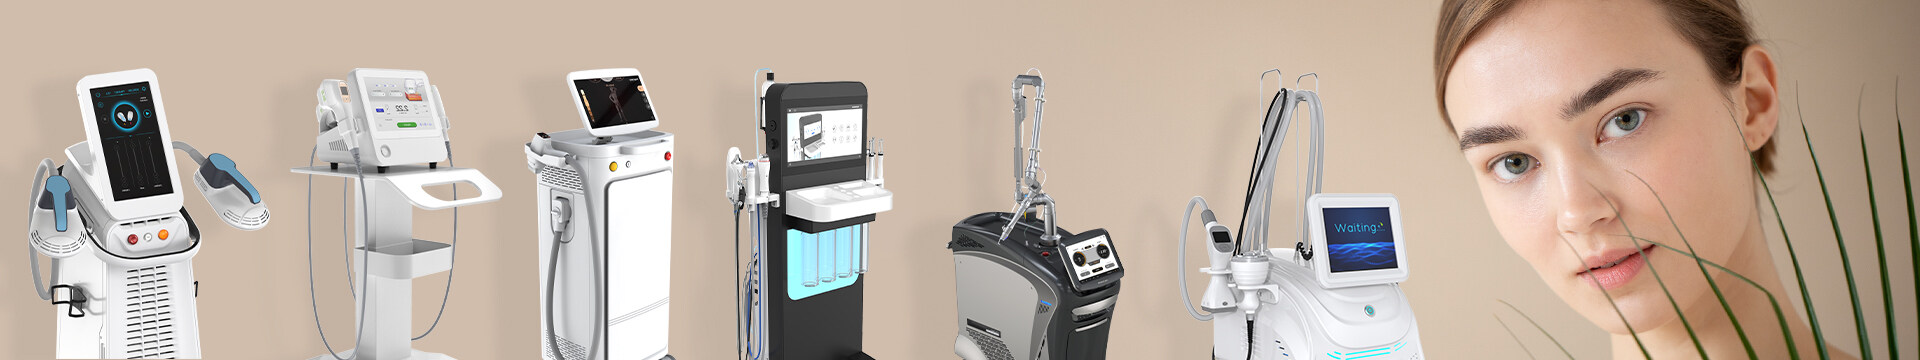 Portable dialysis machine / analyzer machine for sale